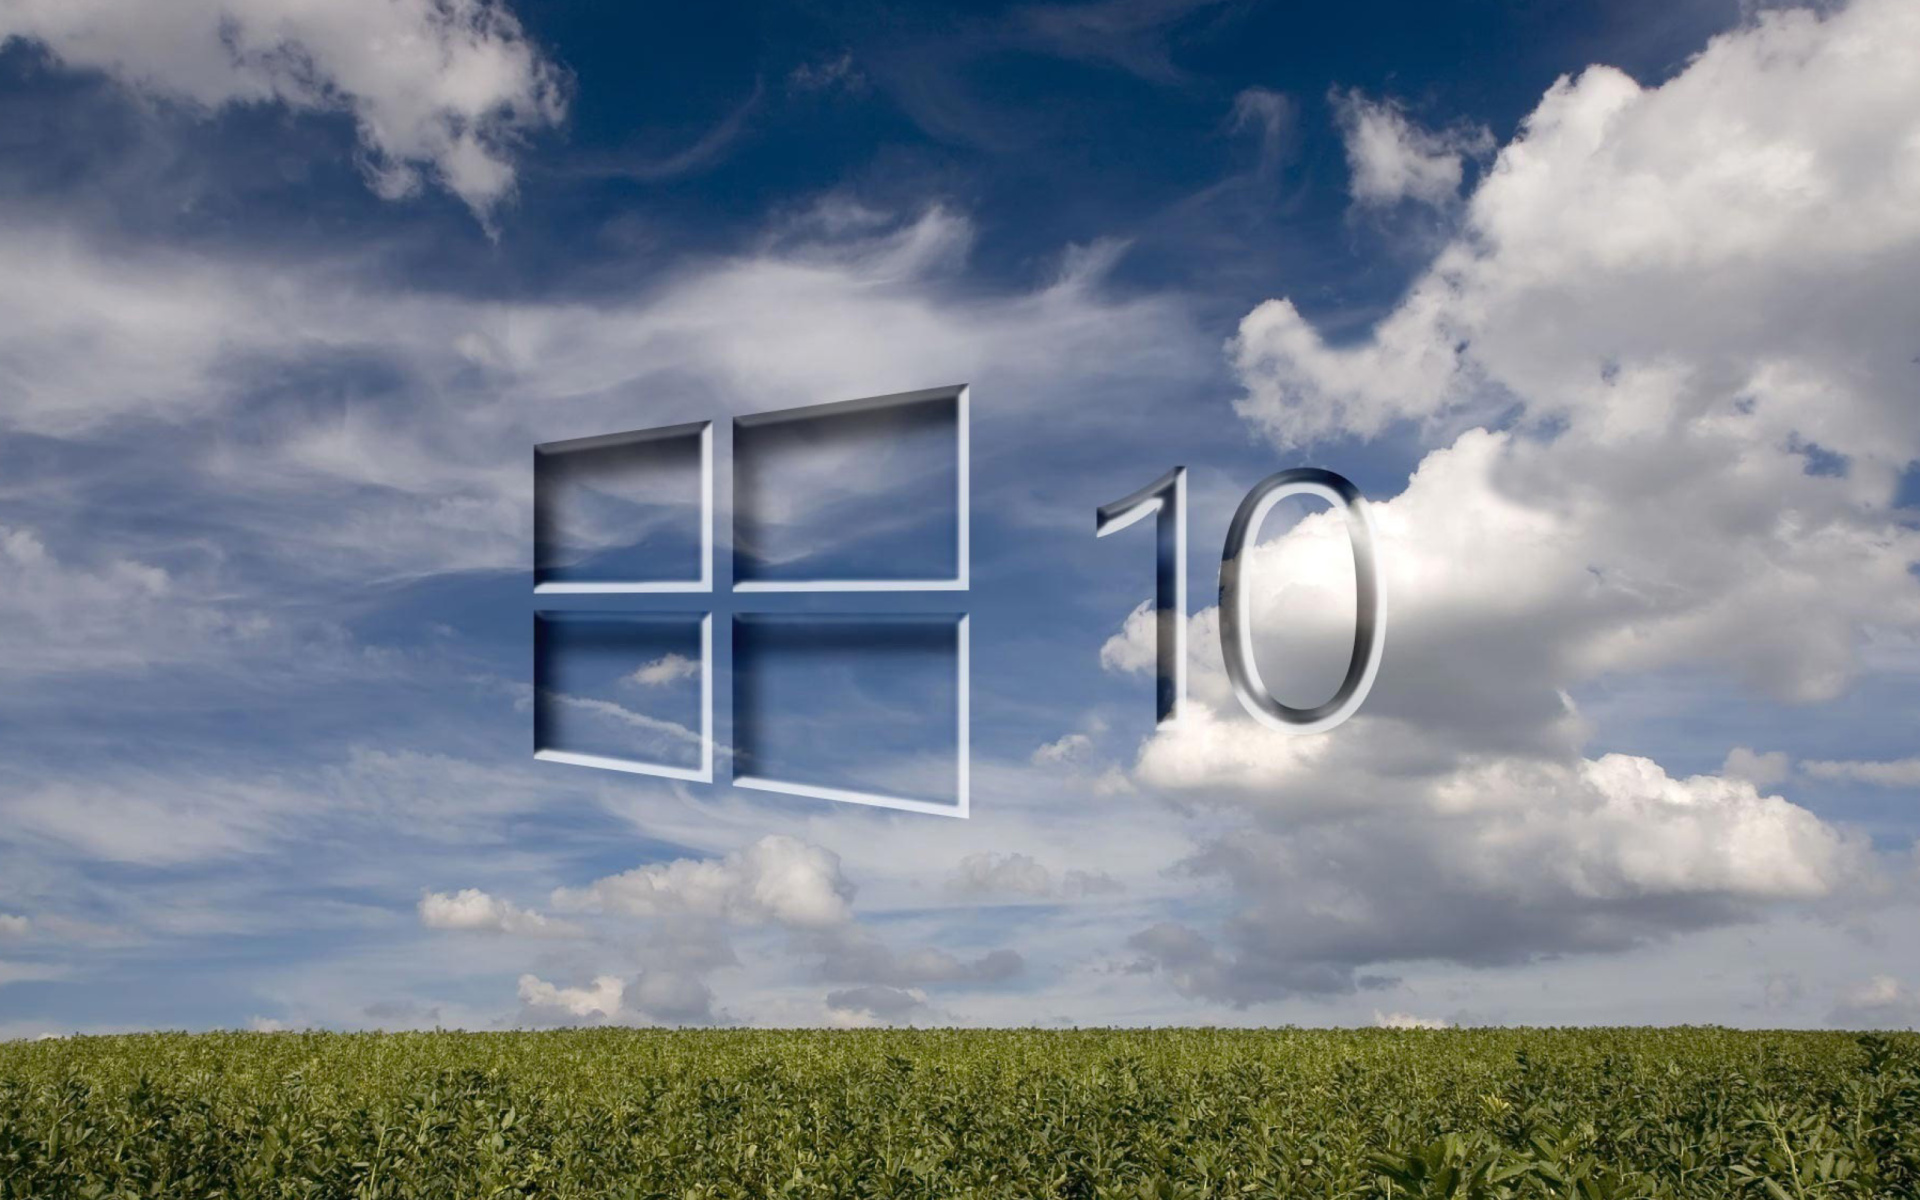 Sfondi Windows 10 Grass Field 1920x1200